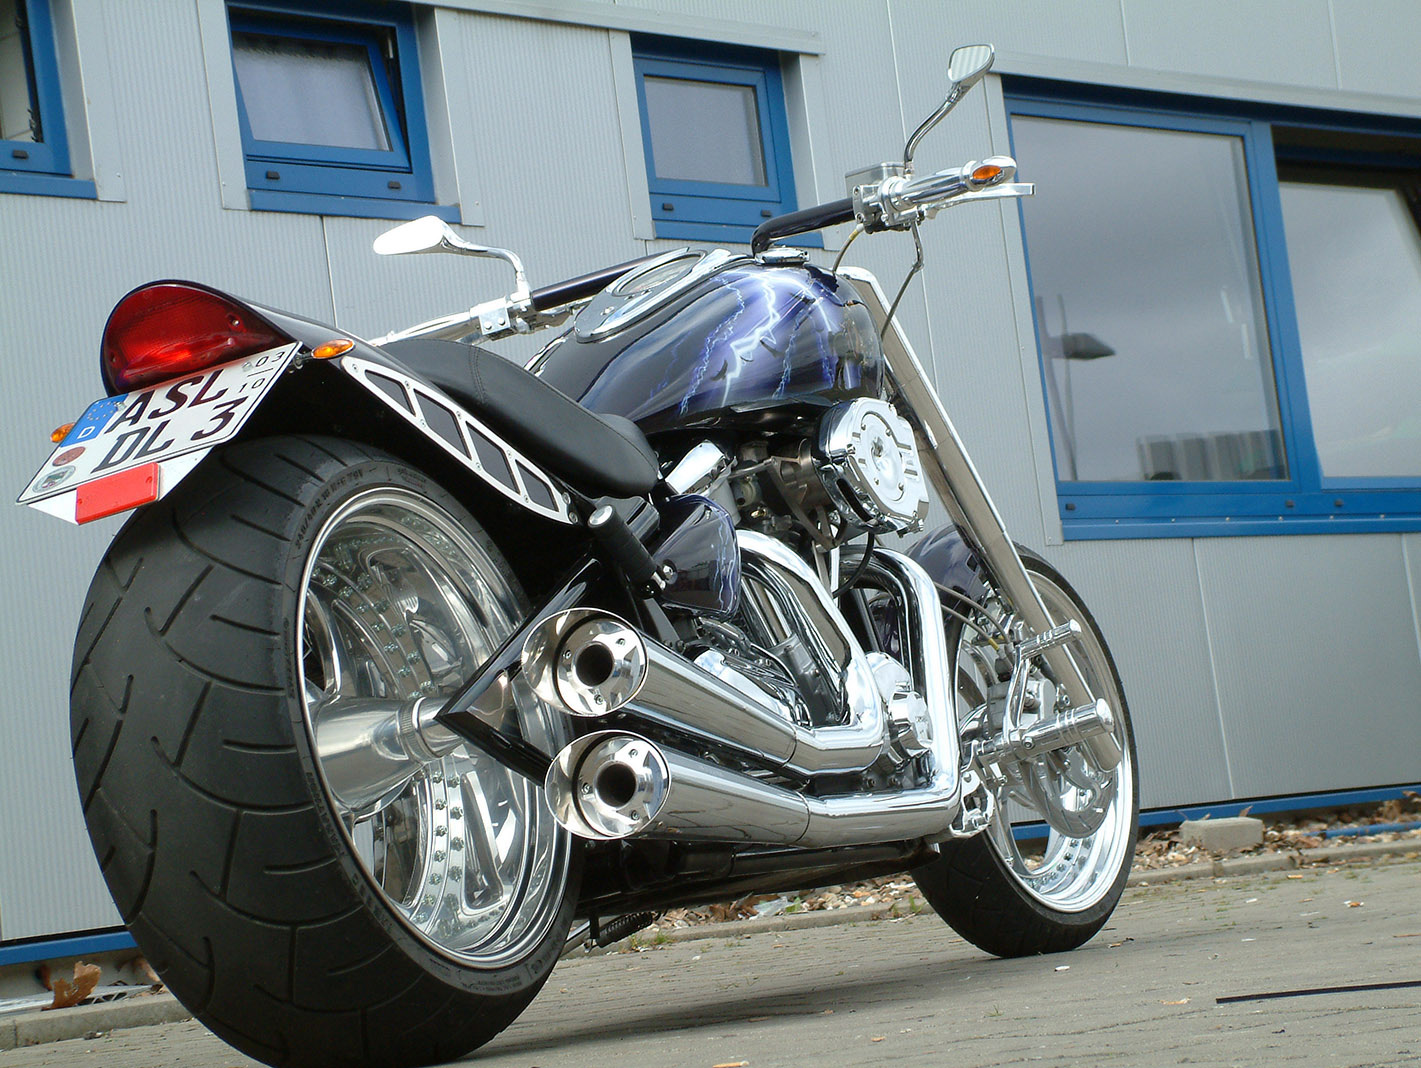 Customized Yamaha Motorcycles by Thunderbike